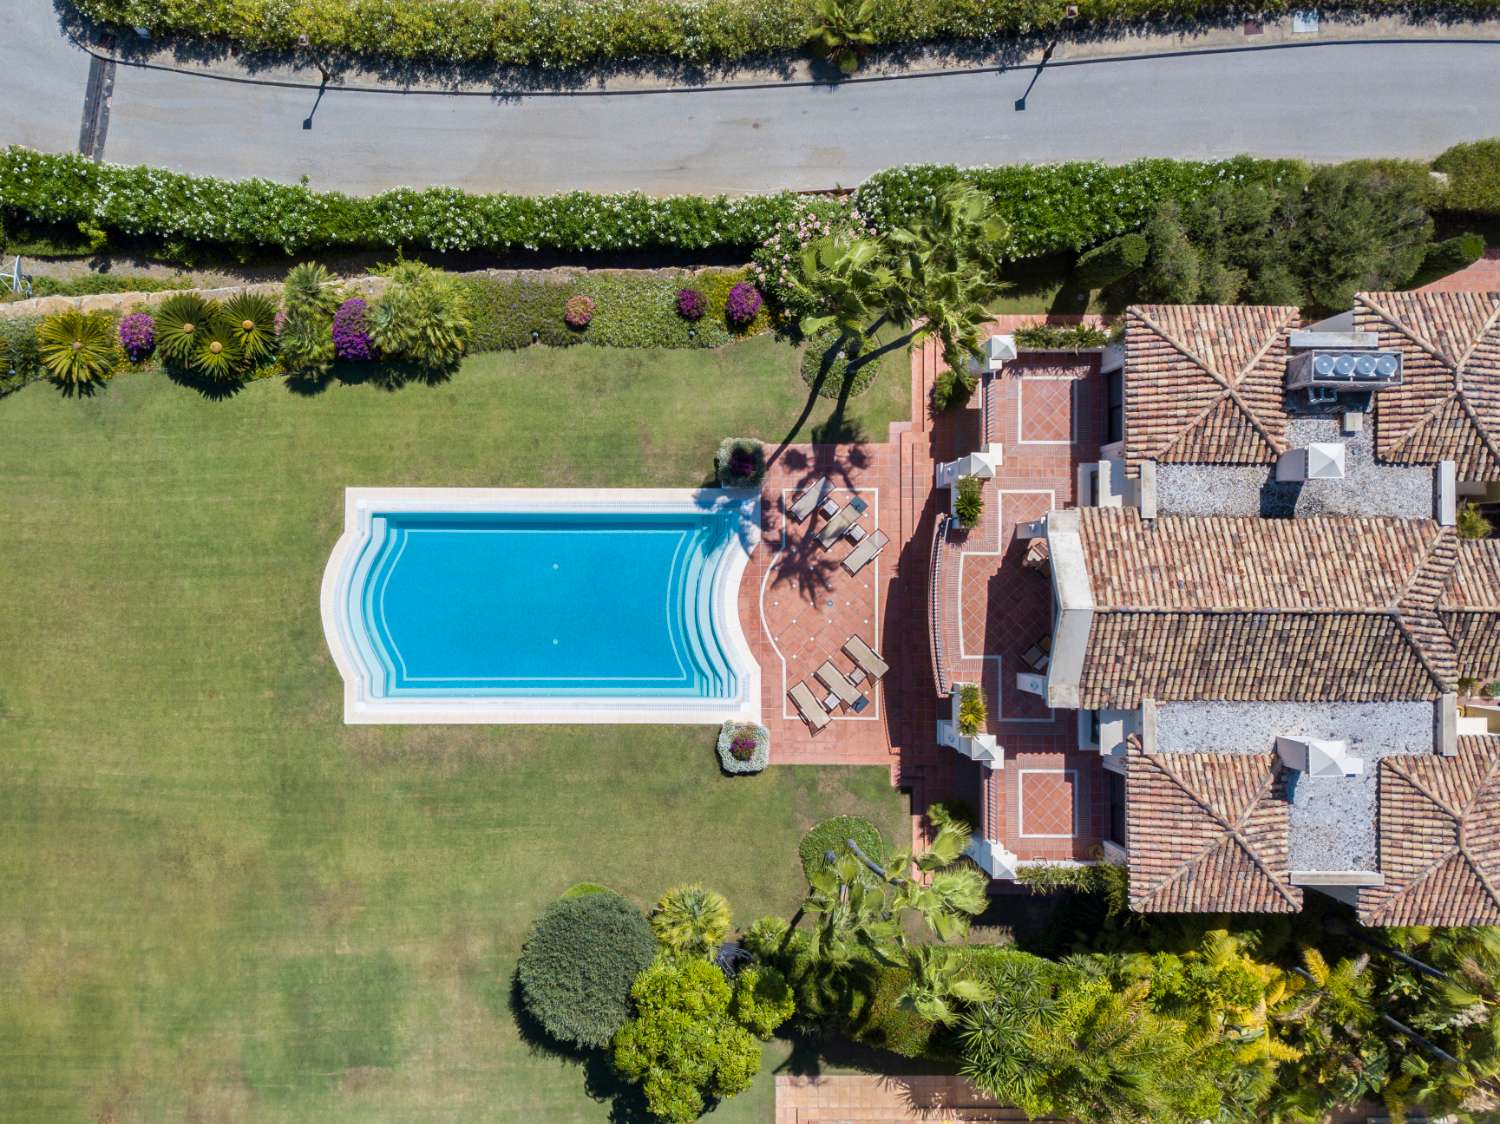 Vila v prodeji in Marbella